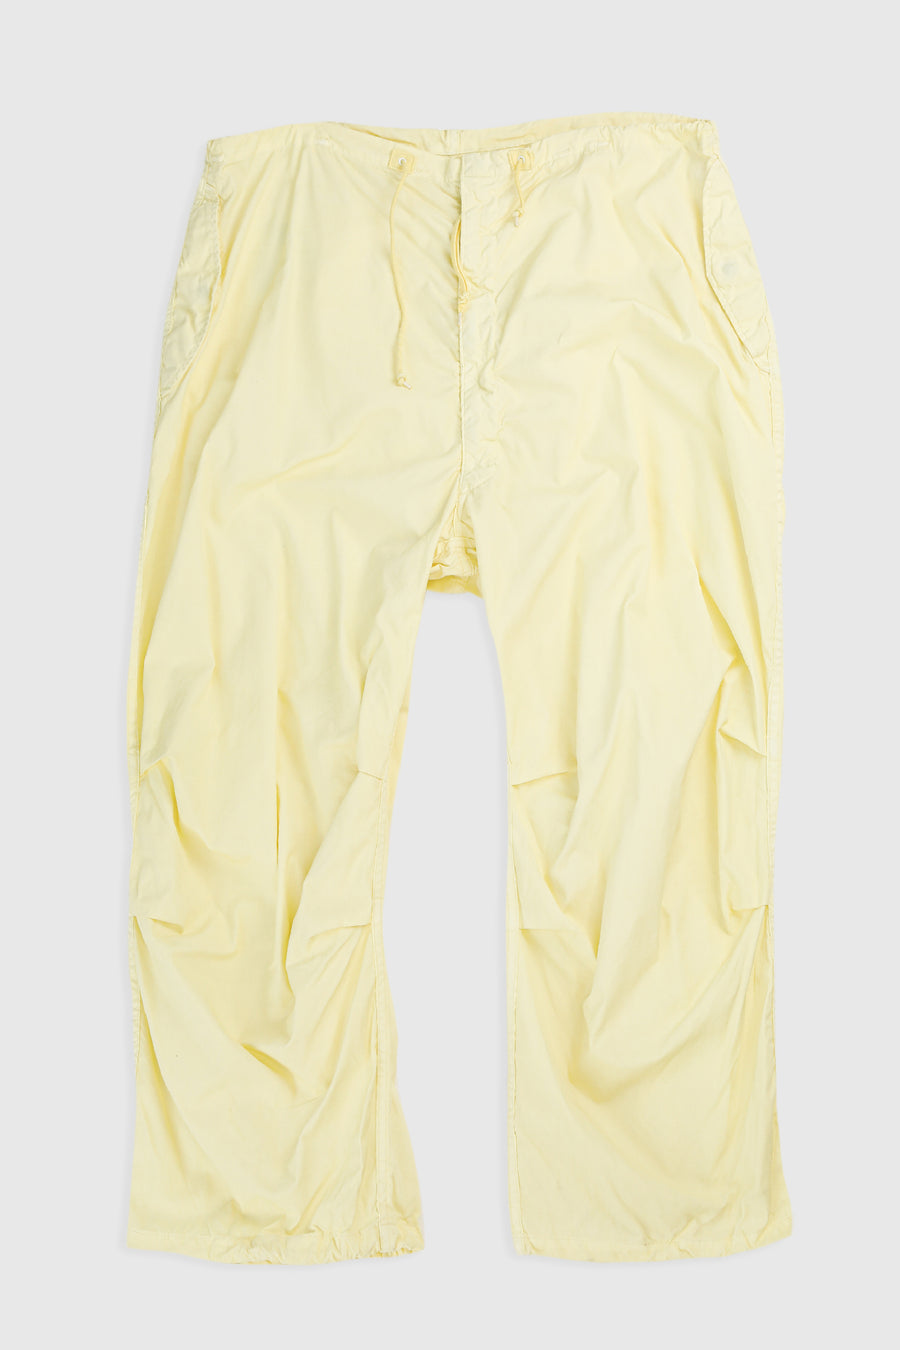 Vintage Cream Parachute Pants